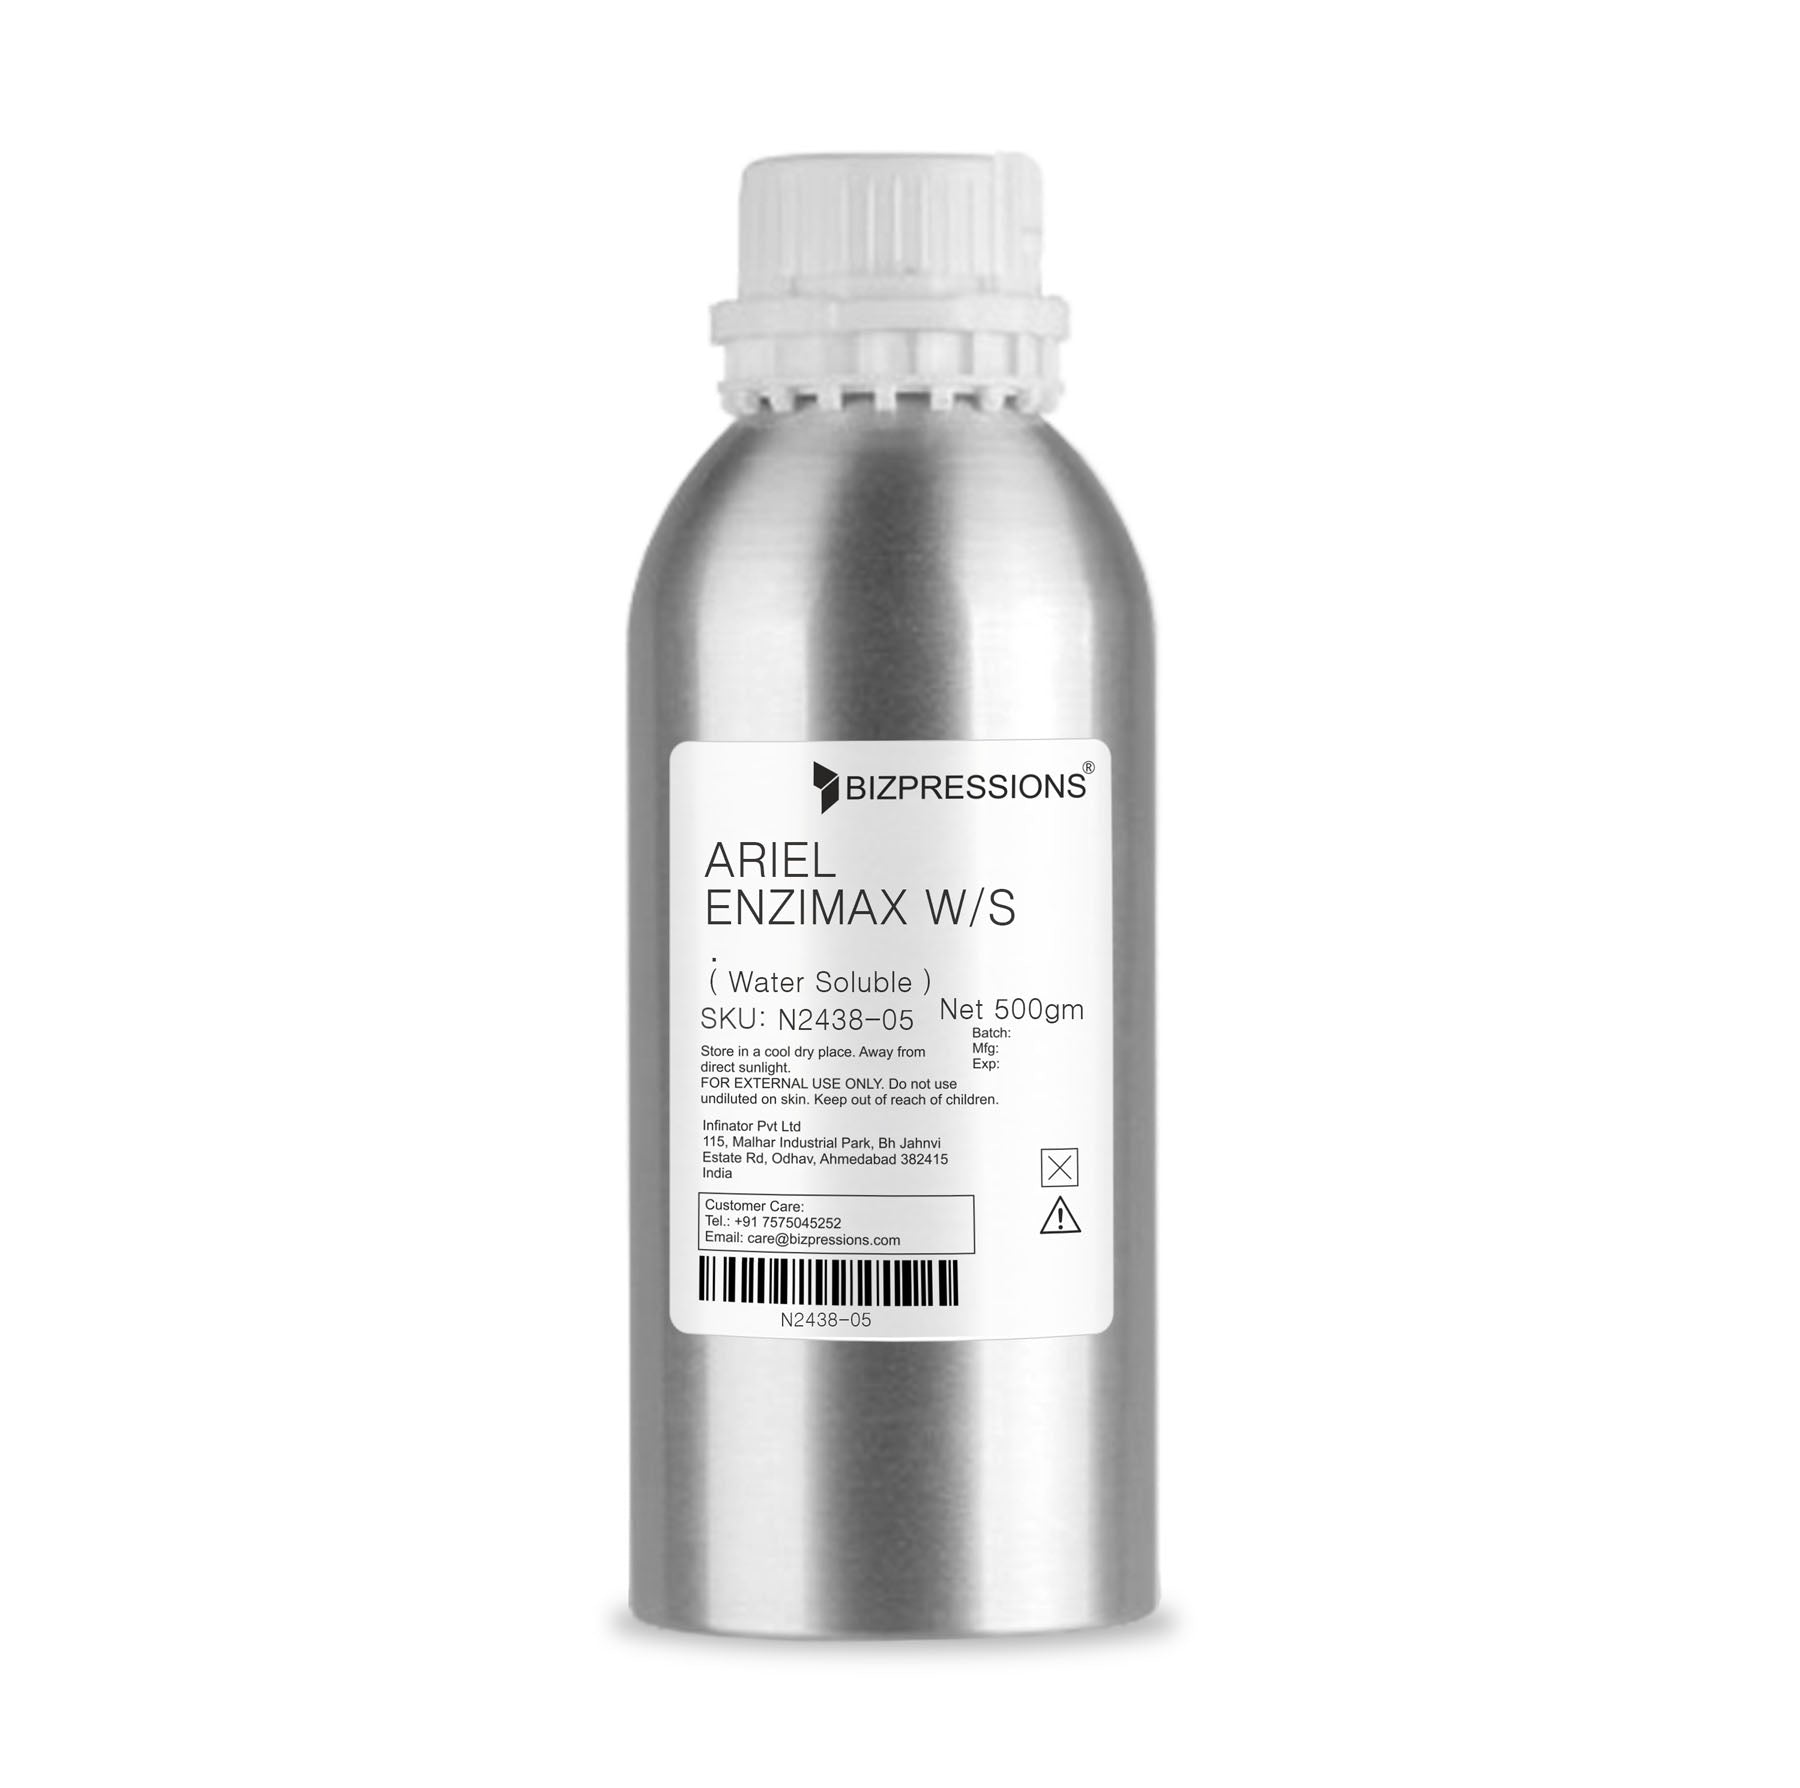 ARIEL ENZIMAX W/S - Fragrance ( Water Soluble ) - 500 gm